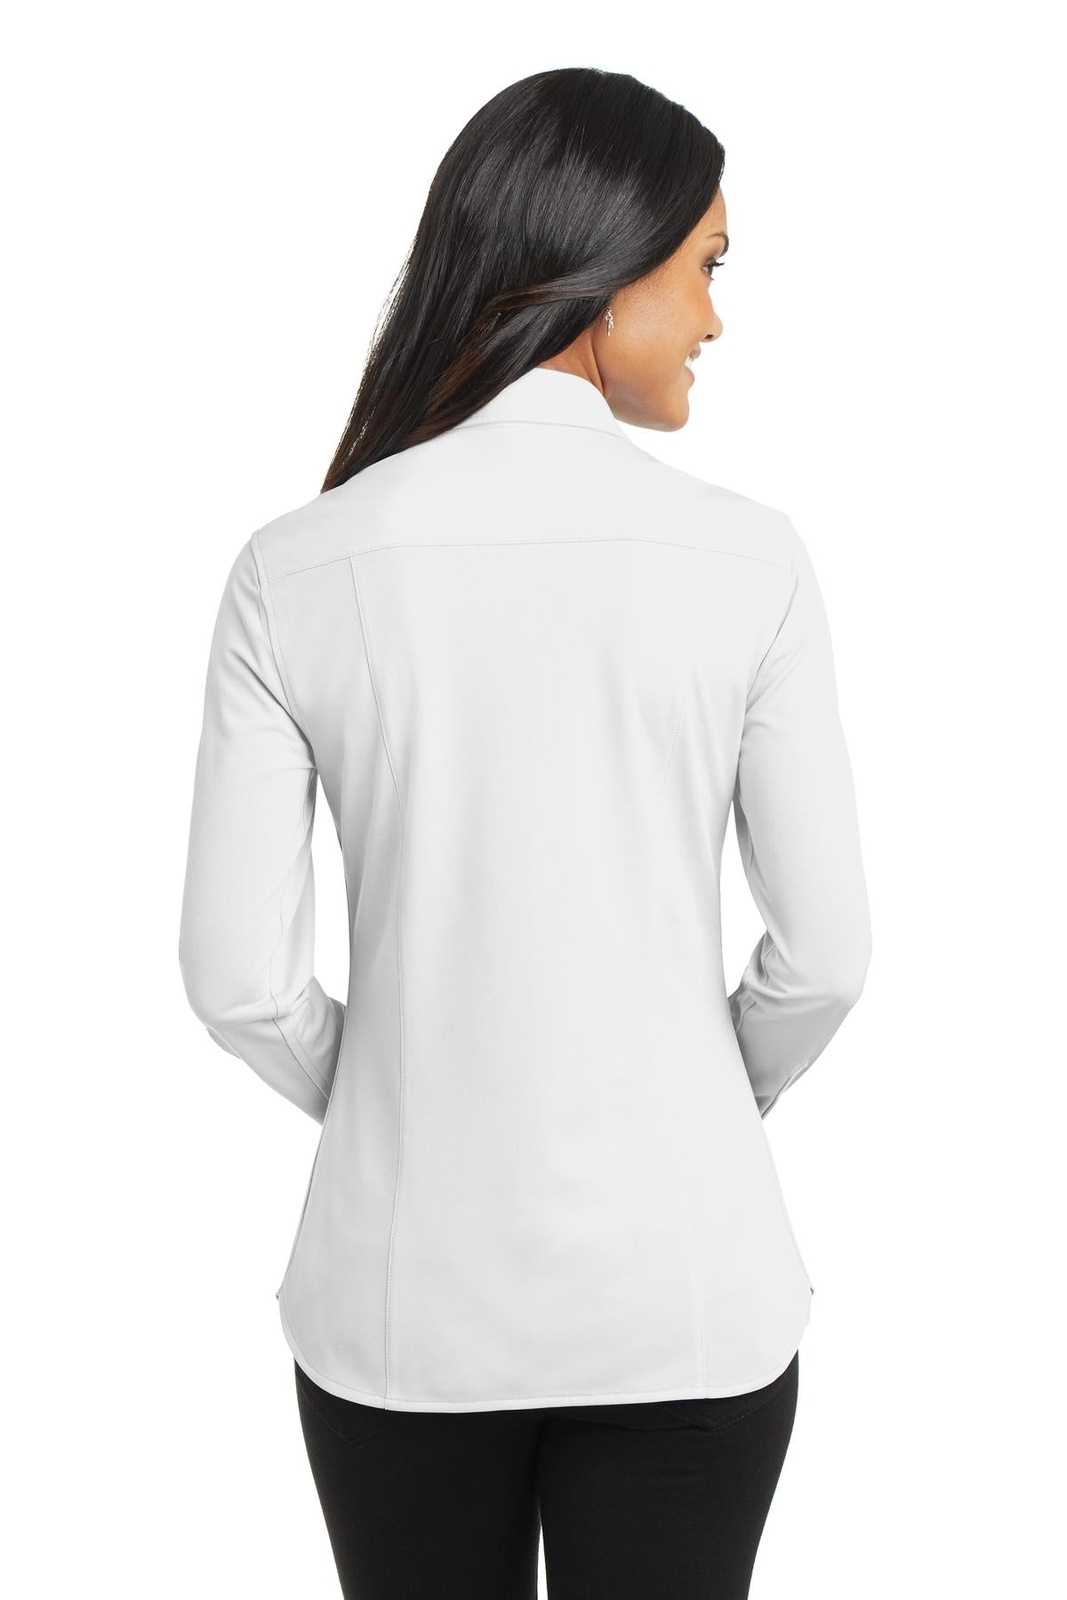 Port Authority L570 Ladies Dimension Knit Dress Shirt - White - HIT a Double - 1